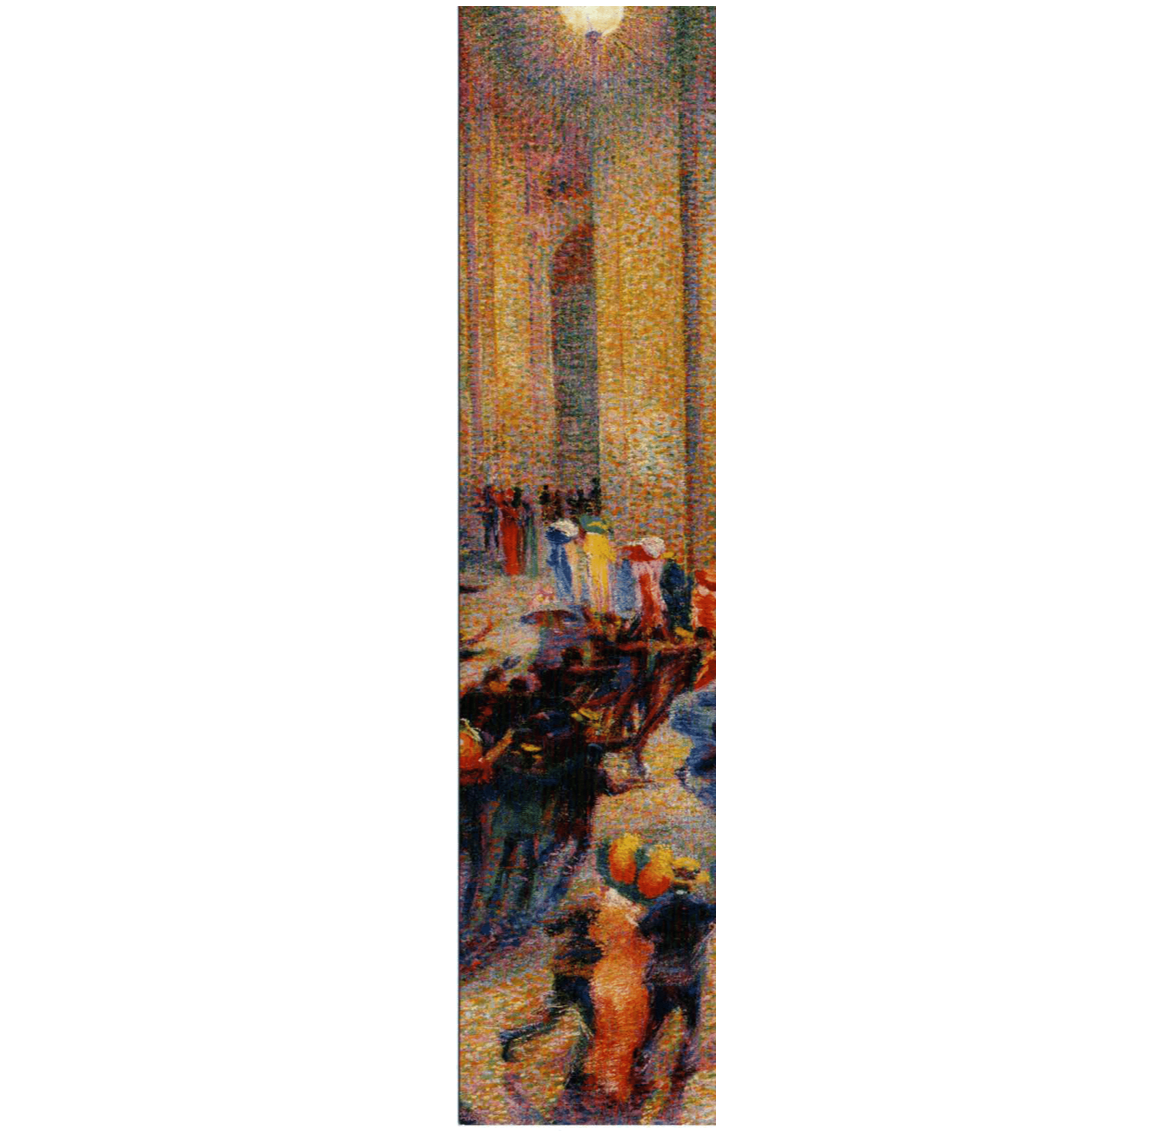 Segnalibro Rissa in galleria, Umberto Boccioni - Bottega Brera 